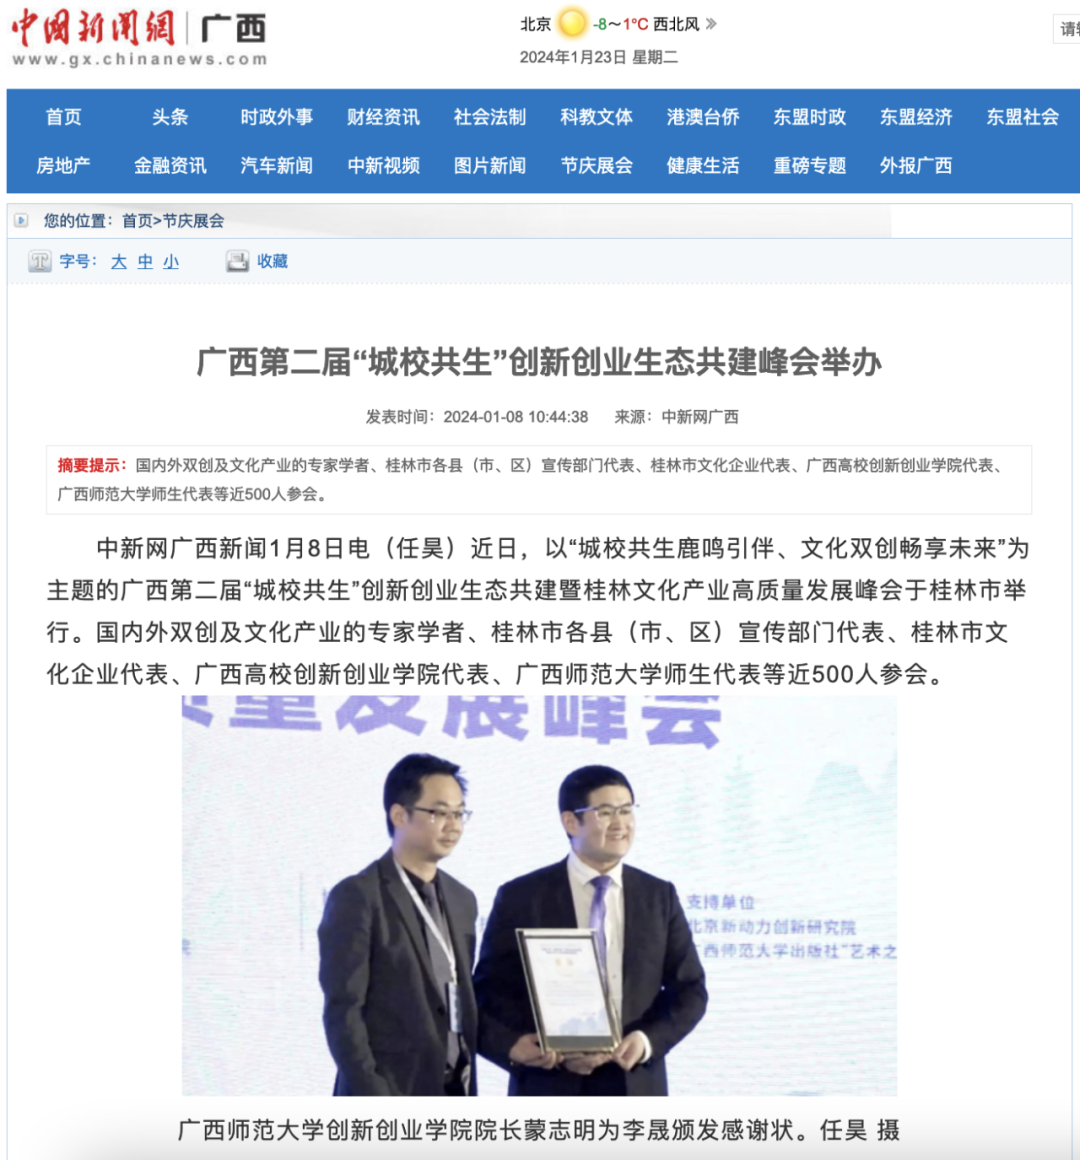 中新网报道李晟出席广西“城校共生”创新创业生态共建峰会